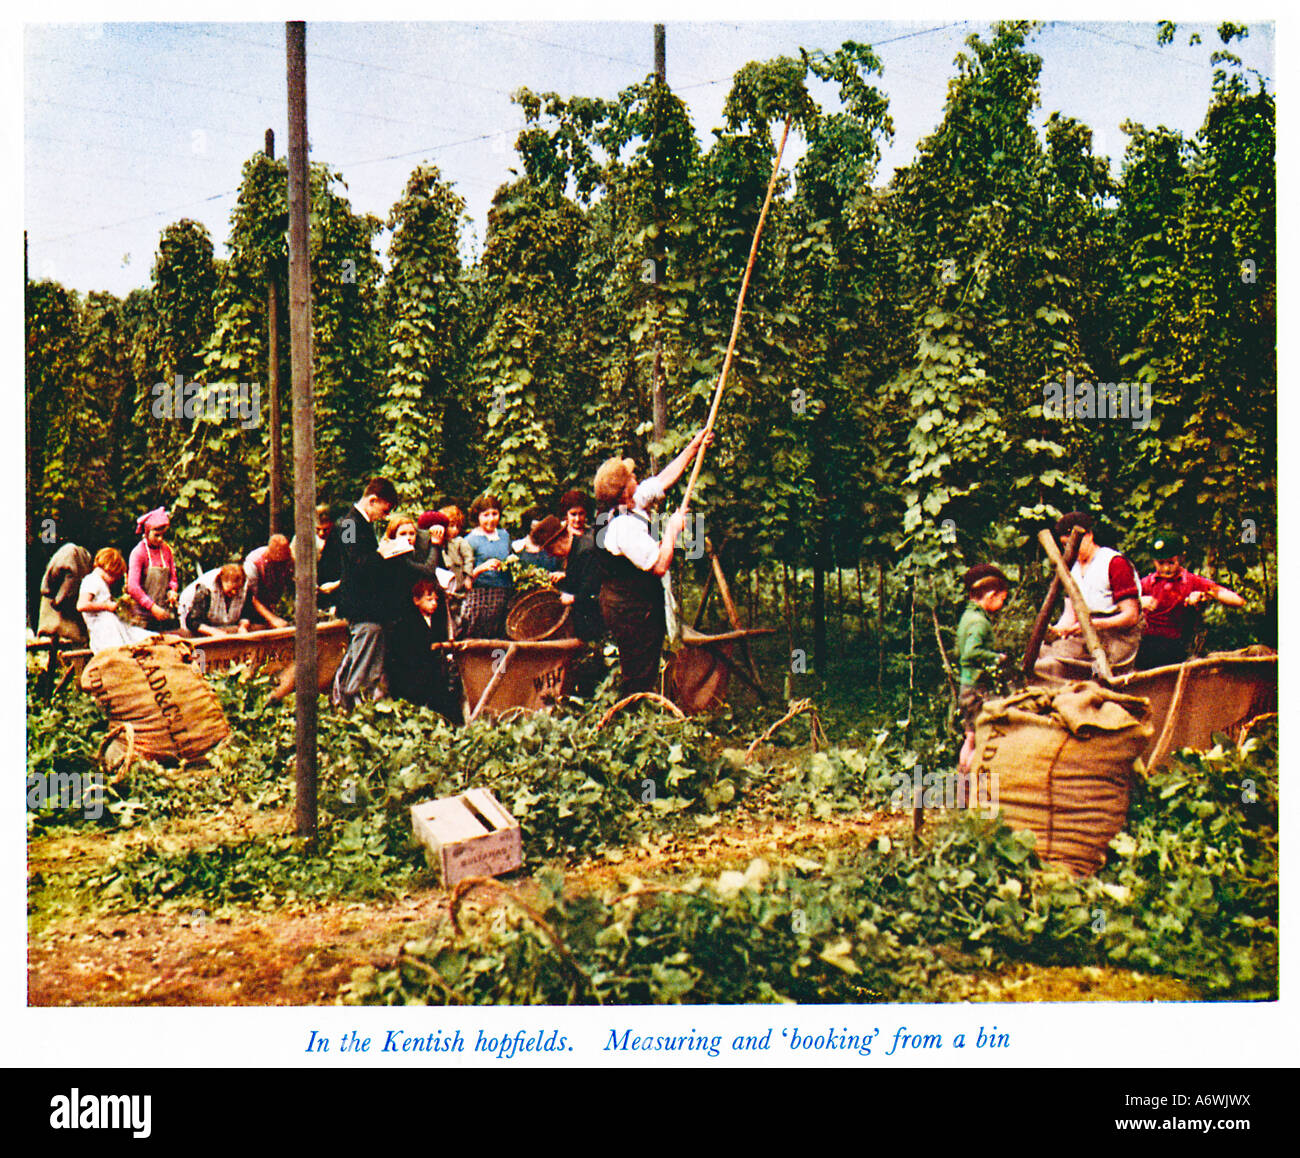 La cueillette du houblon dans le Kent 1930 photo couleur de l'vendangeurs au travail et de mesure à partir d'une réservation bin Banque D'Images